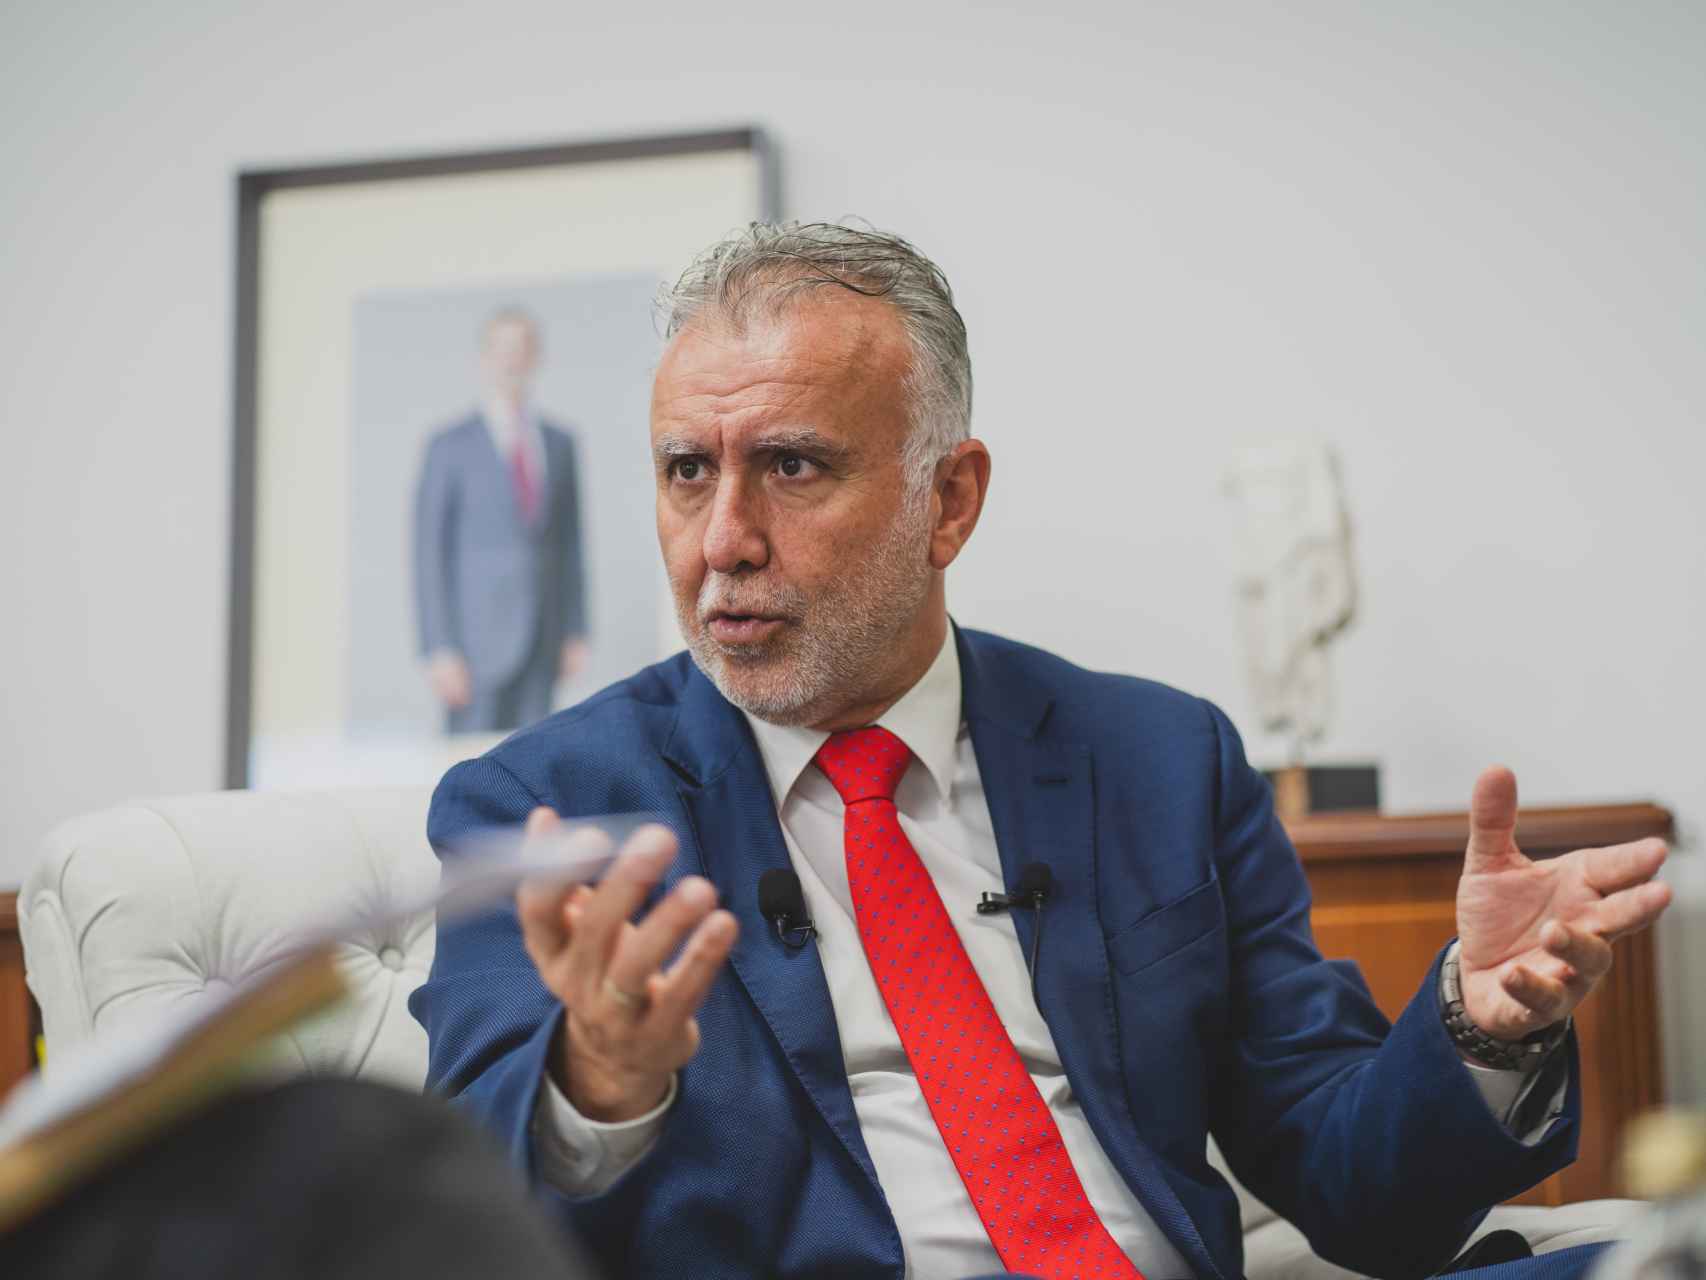 El nuevo responsable de Política Territorial, Ángel Víctor Torres, esta semana, en su despacho del Ministerio, con el retrato de Felipe VI a la espalda.